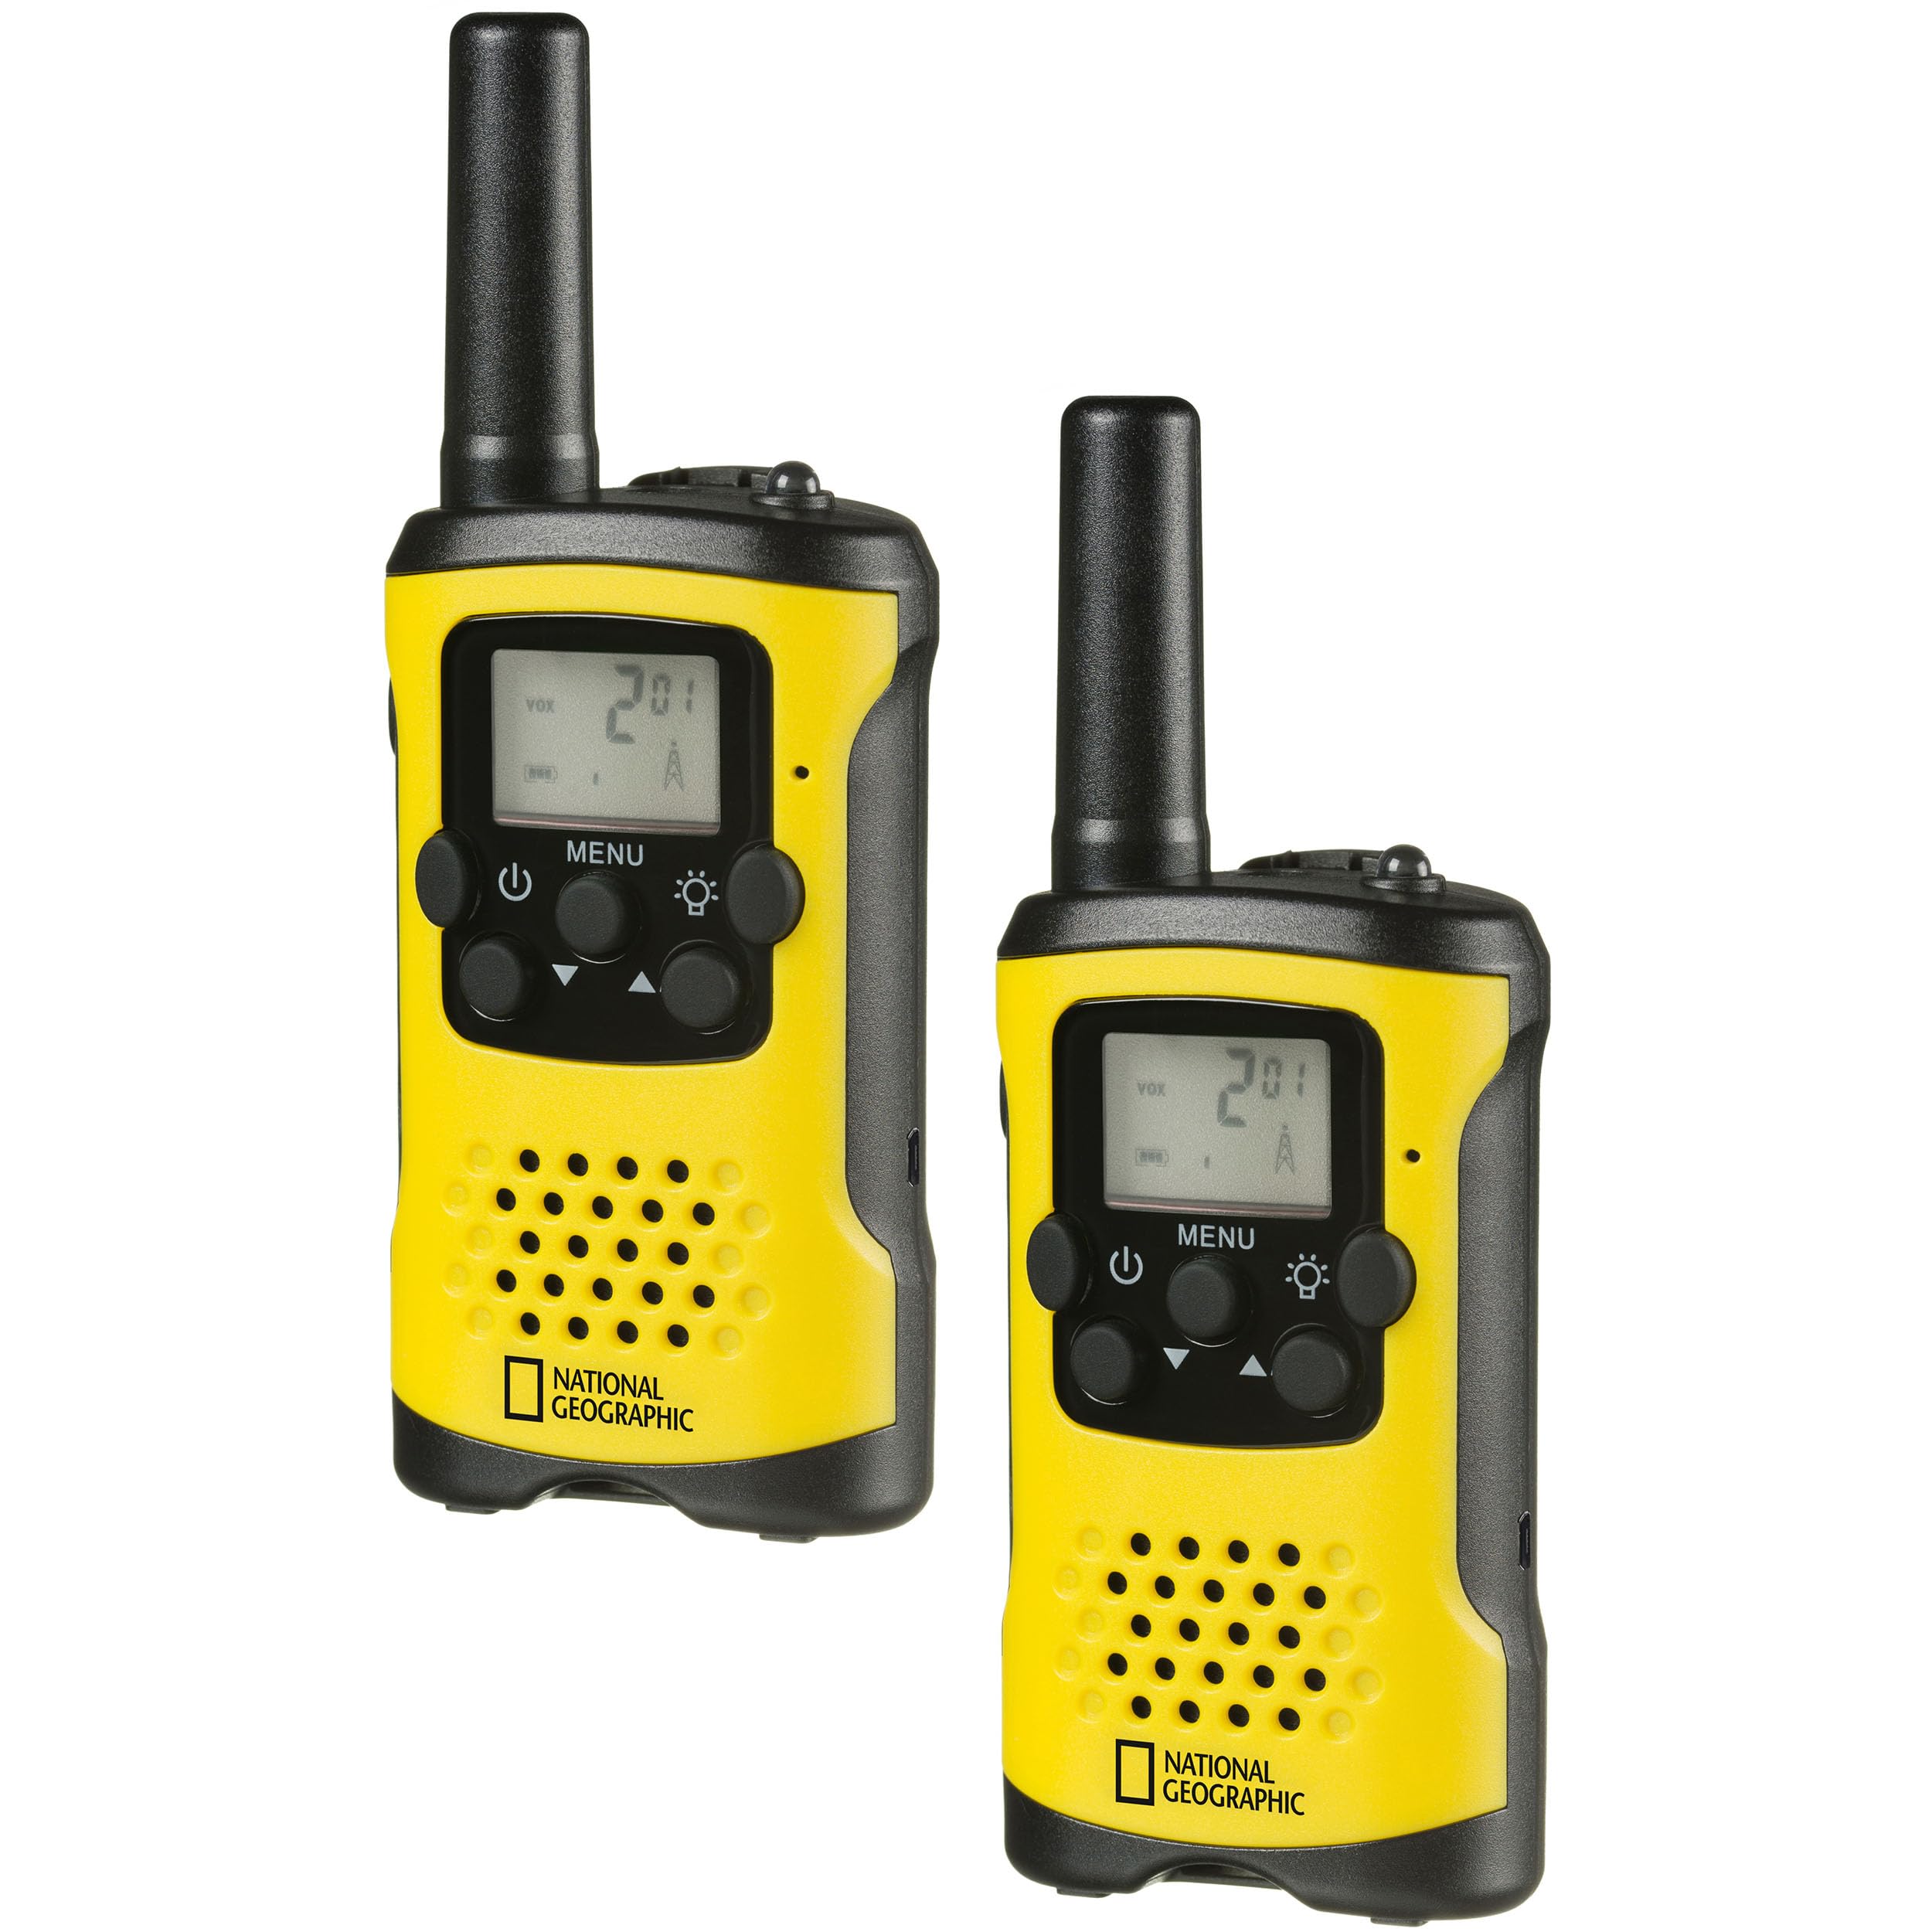 National Geographic Walkie-Talkie 2er-Set, kompakte Funkgeräte mit sehr hoher Reichweite bis zu 6 km, Frei-Hand-Funktion und integrierter Taschenlampe, Schwarz-Gelb, 9111450